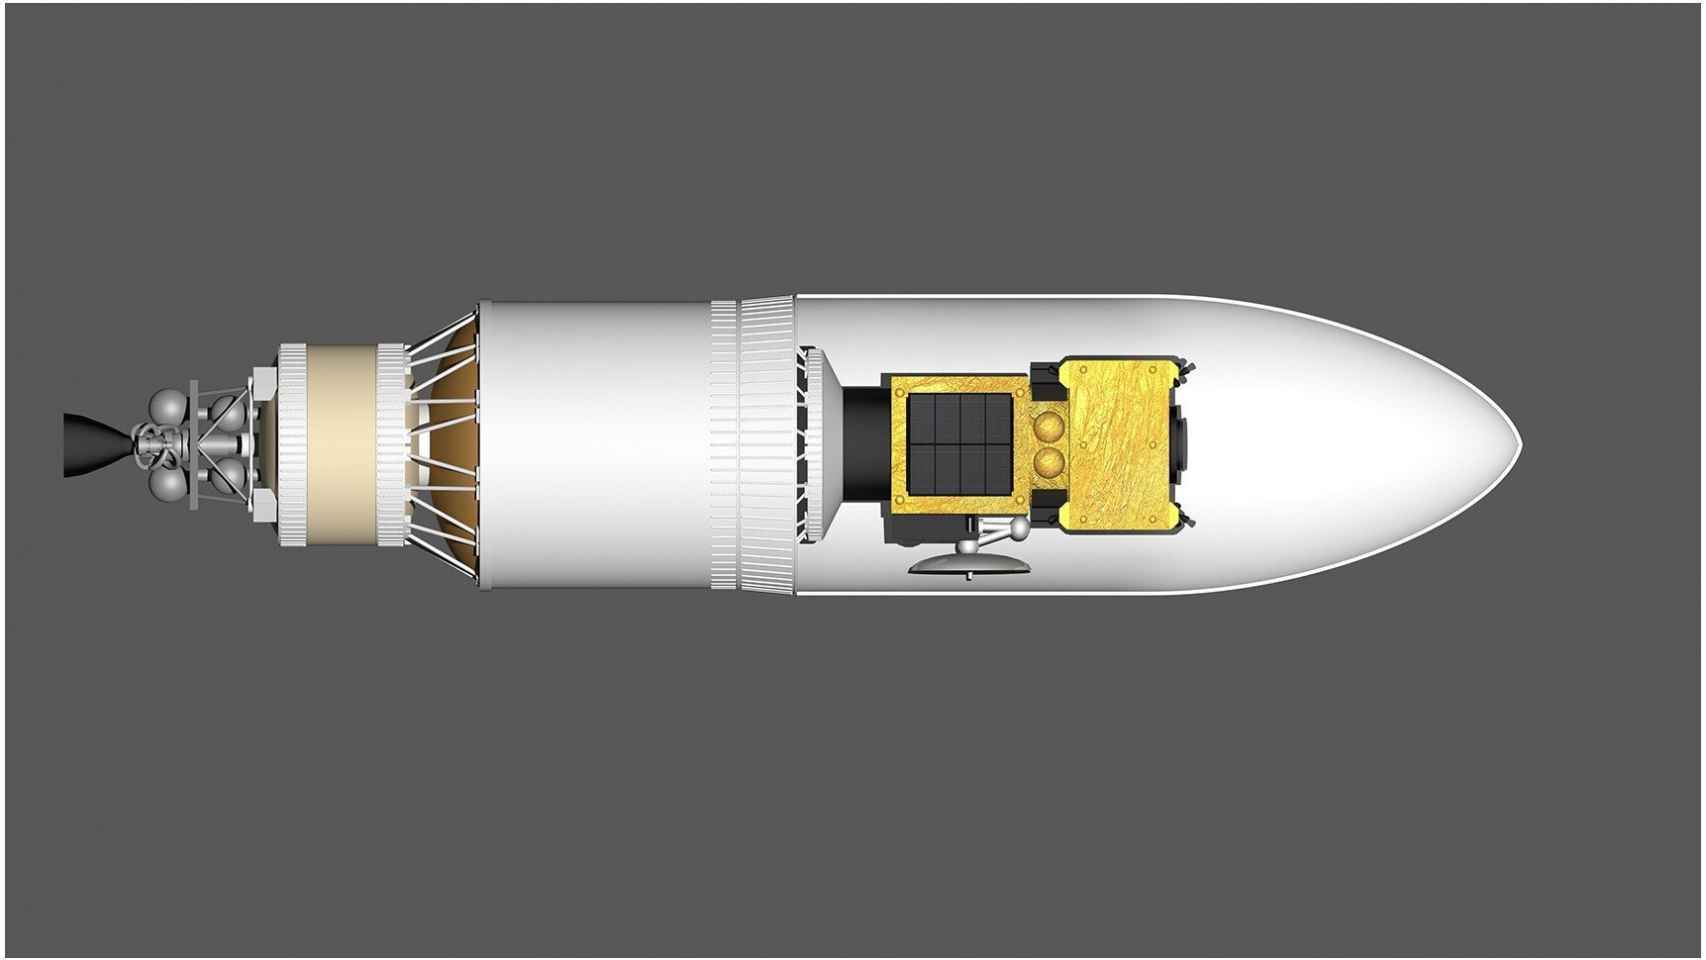 Parte del cohete que impactaría contra el asteroide